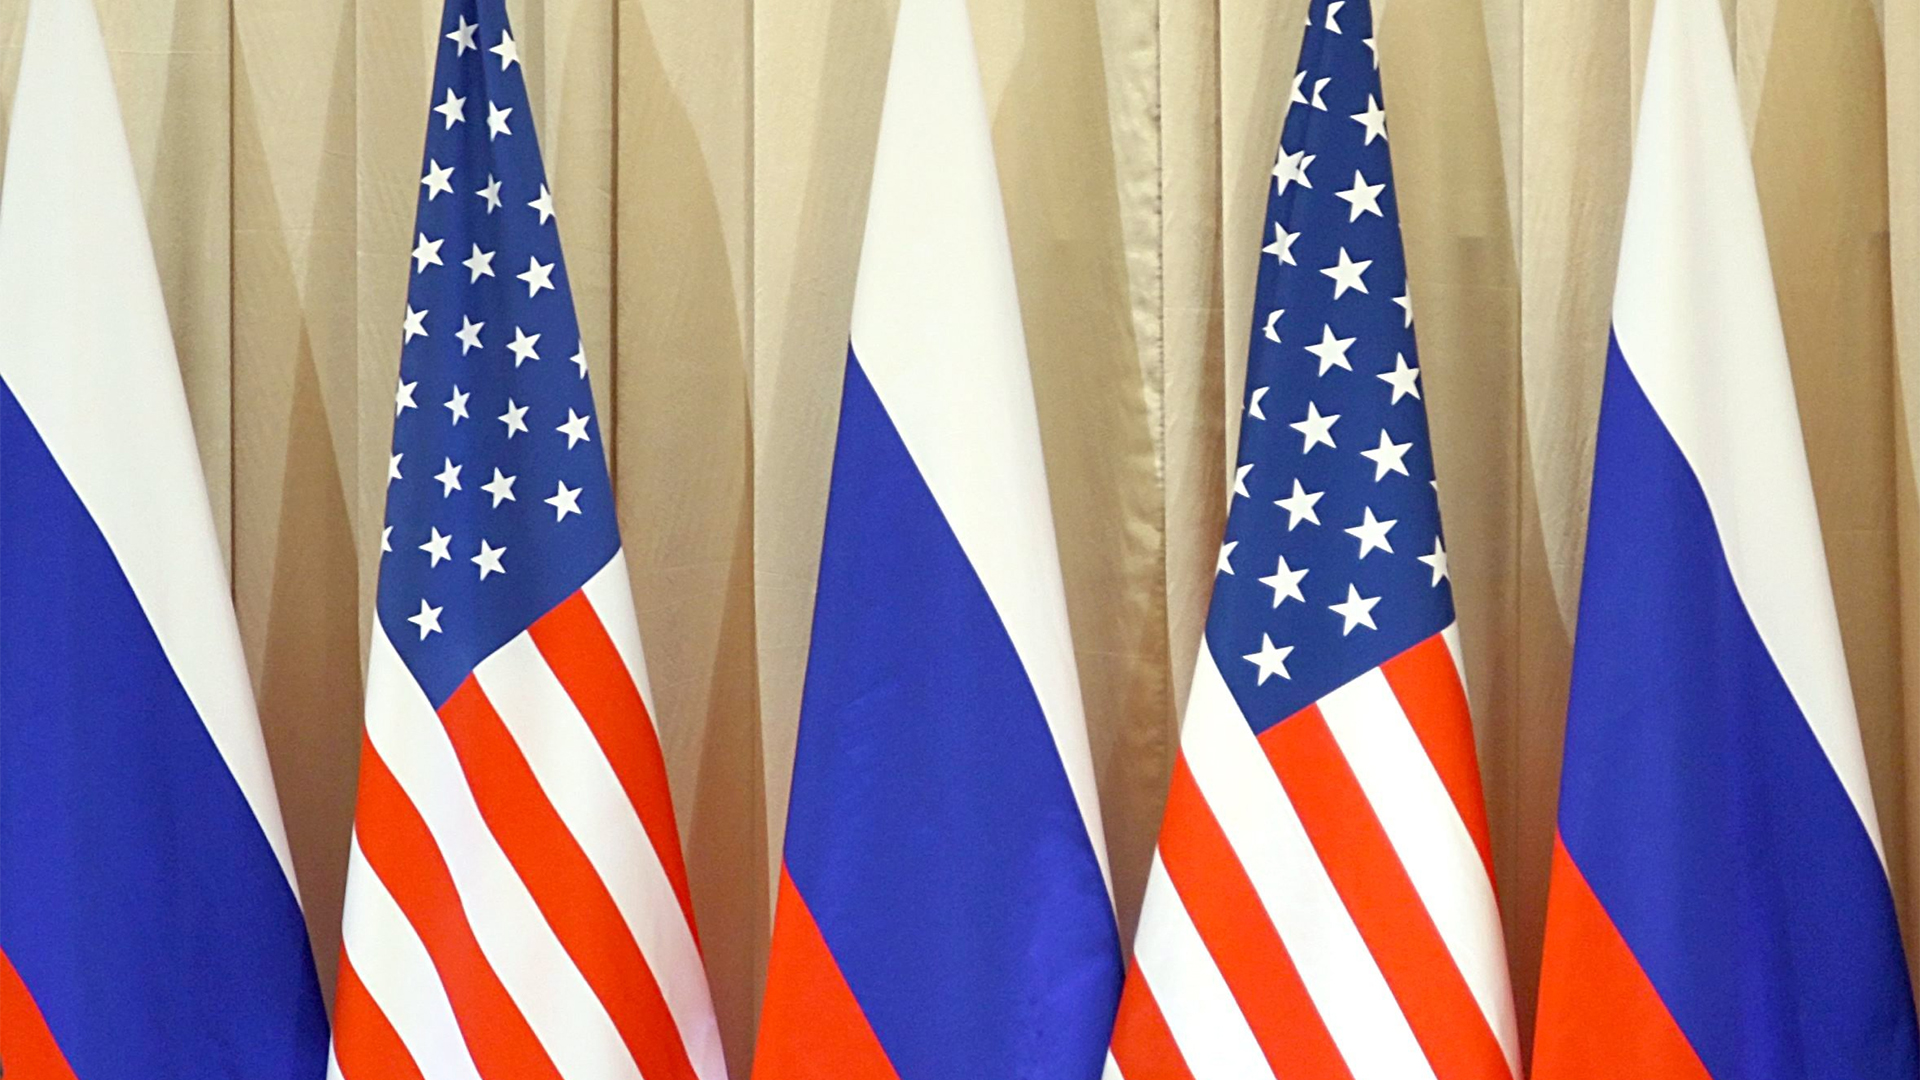 Flagge der USA und Russland